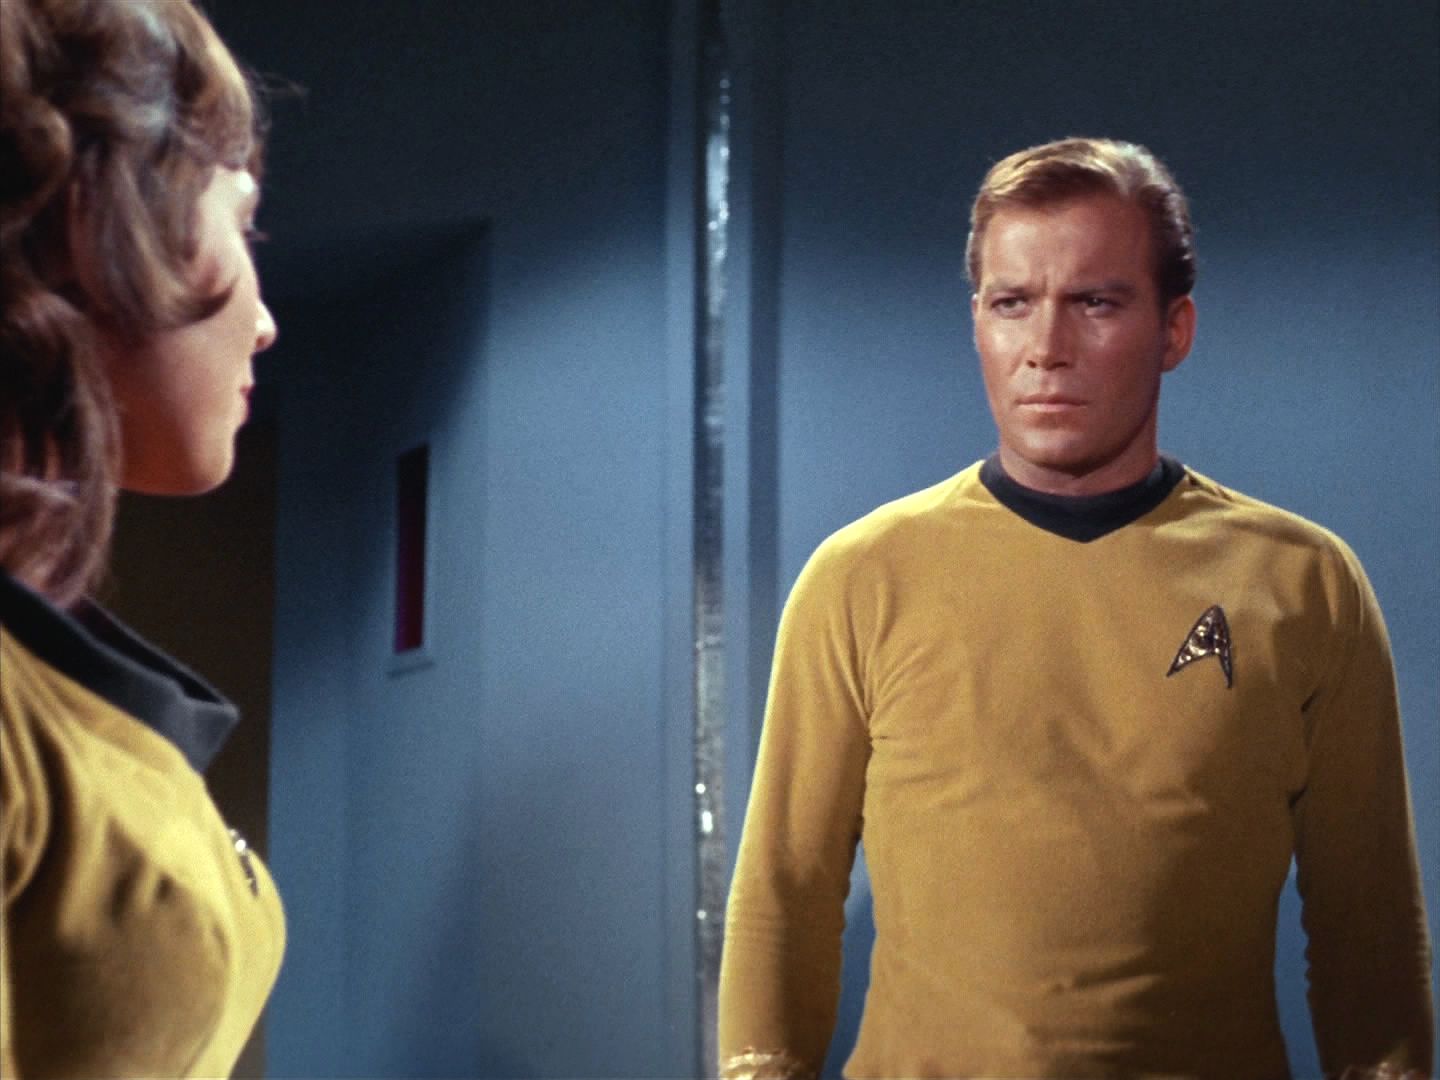 Kapitán ještě zašel vyjádřit účast Angele, která truchlí nad ztrátou milovaného muže. Ujišťuje ji, že jeho smrt měla smysl. Pomohl zachránit přes 400 životů na Enterprise.